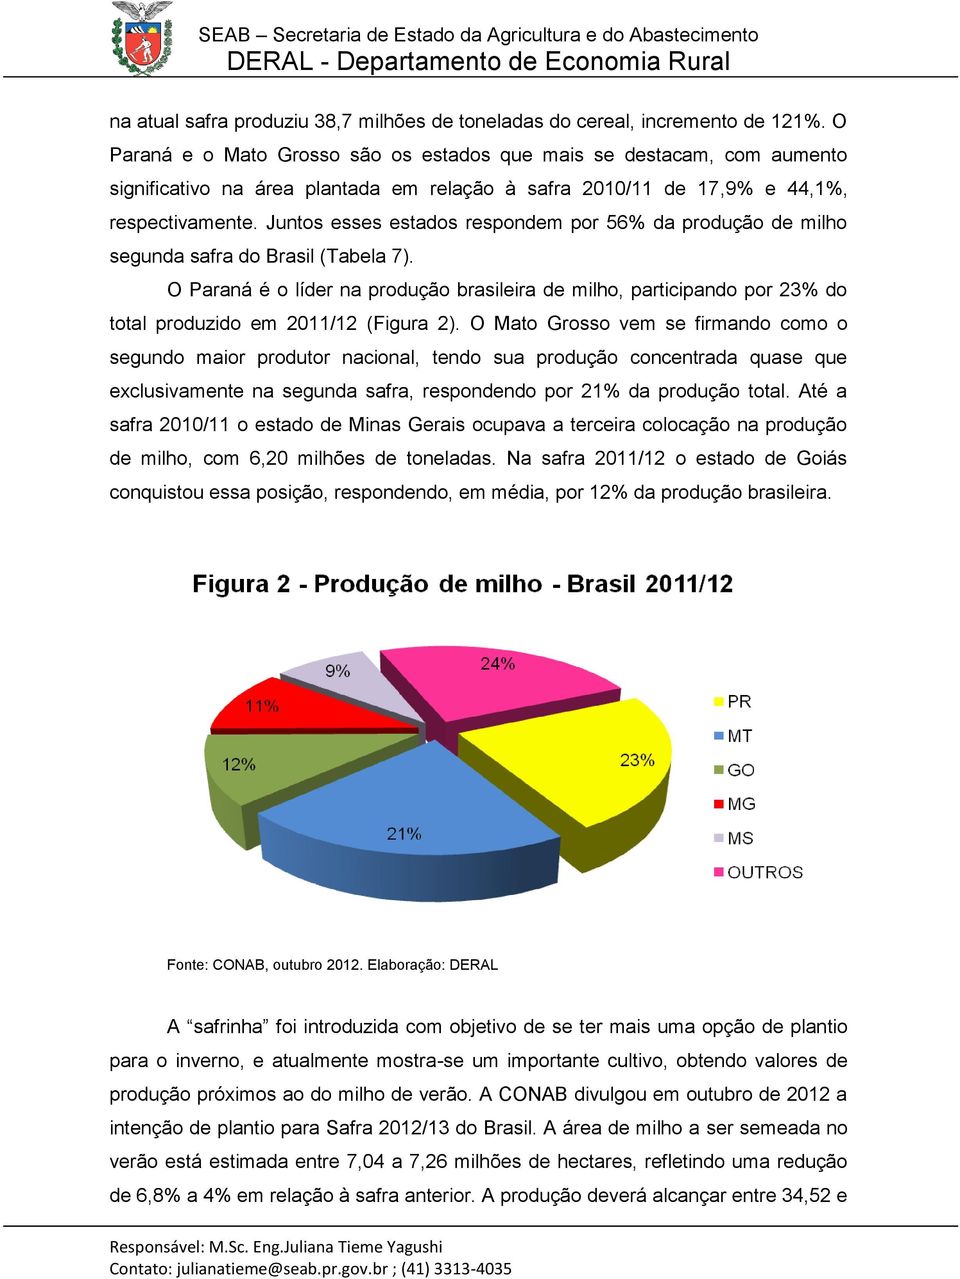 Juntos esses estados respondem por 56% da produção de milho segunda safra do Brasil (Tabela 7).